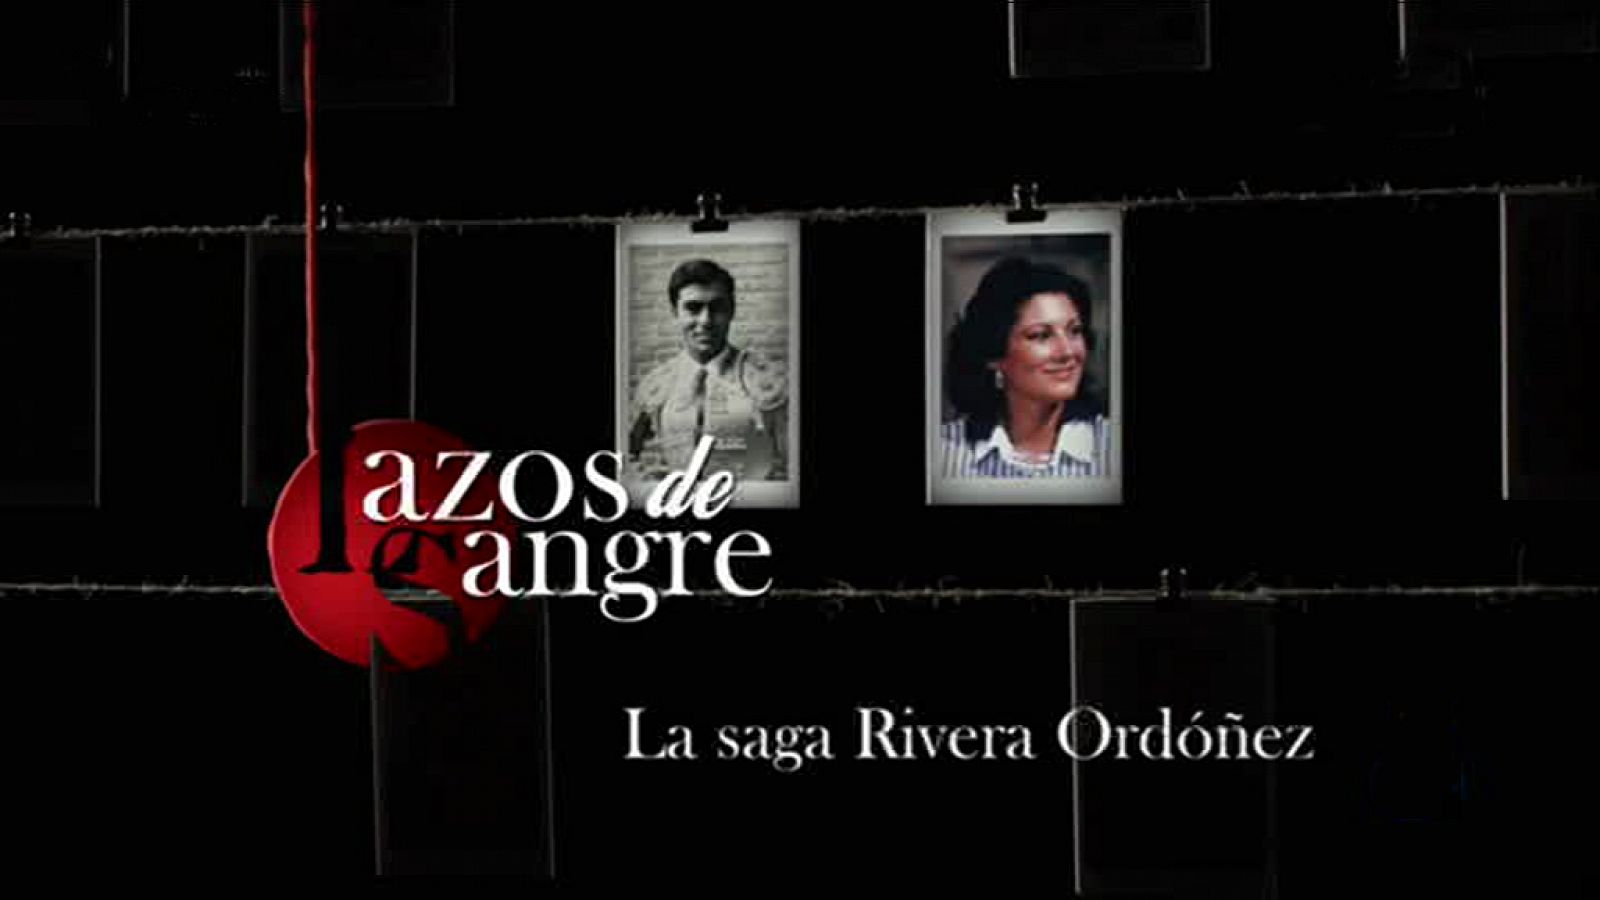 Lazos de sangre - Este jueves, la saga Rivera Ordóñez